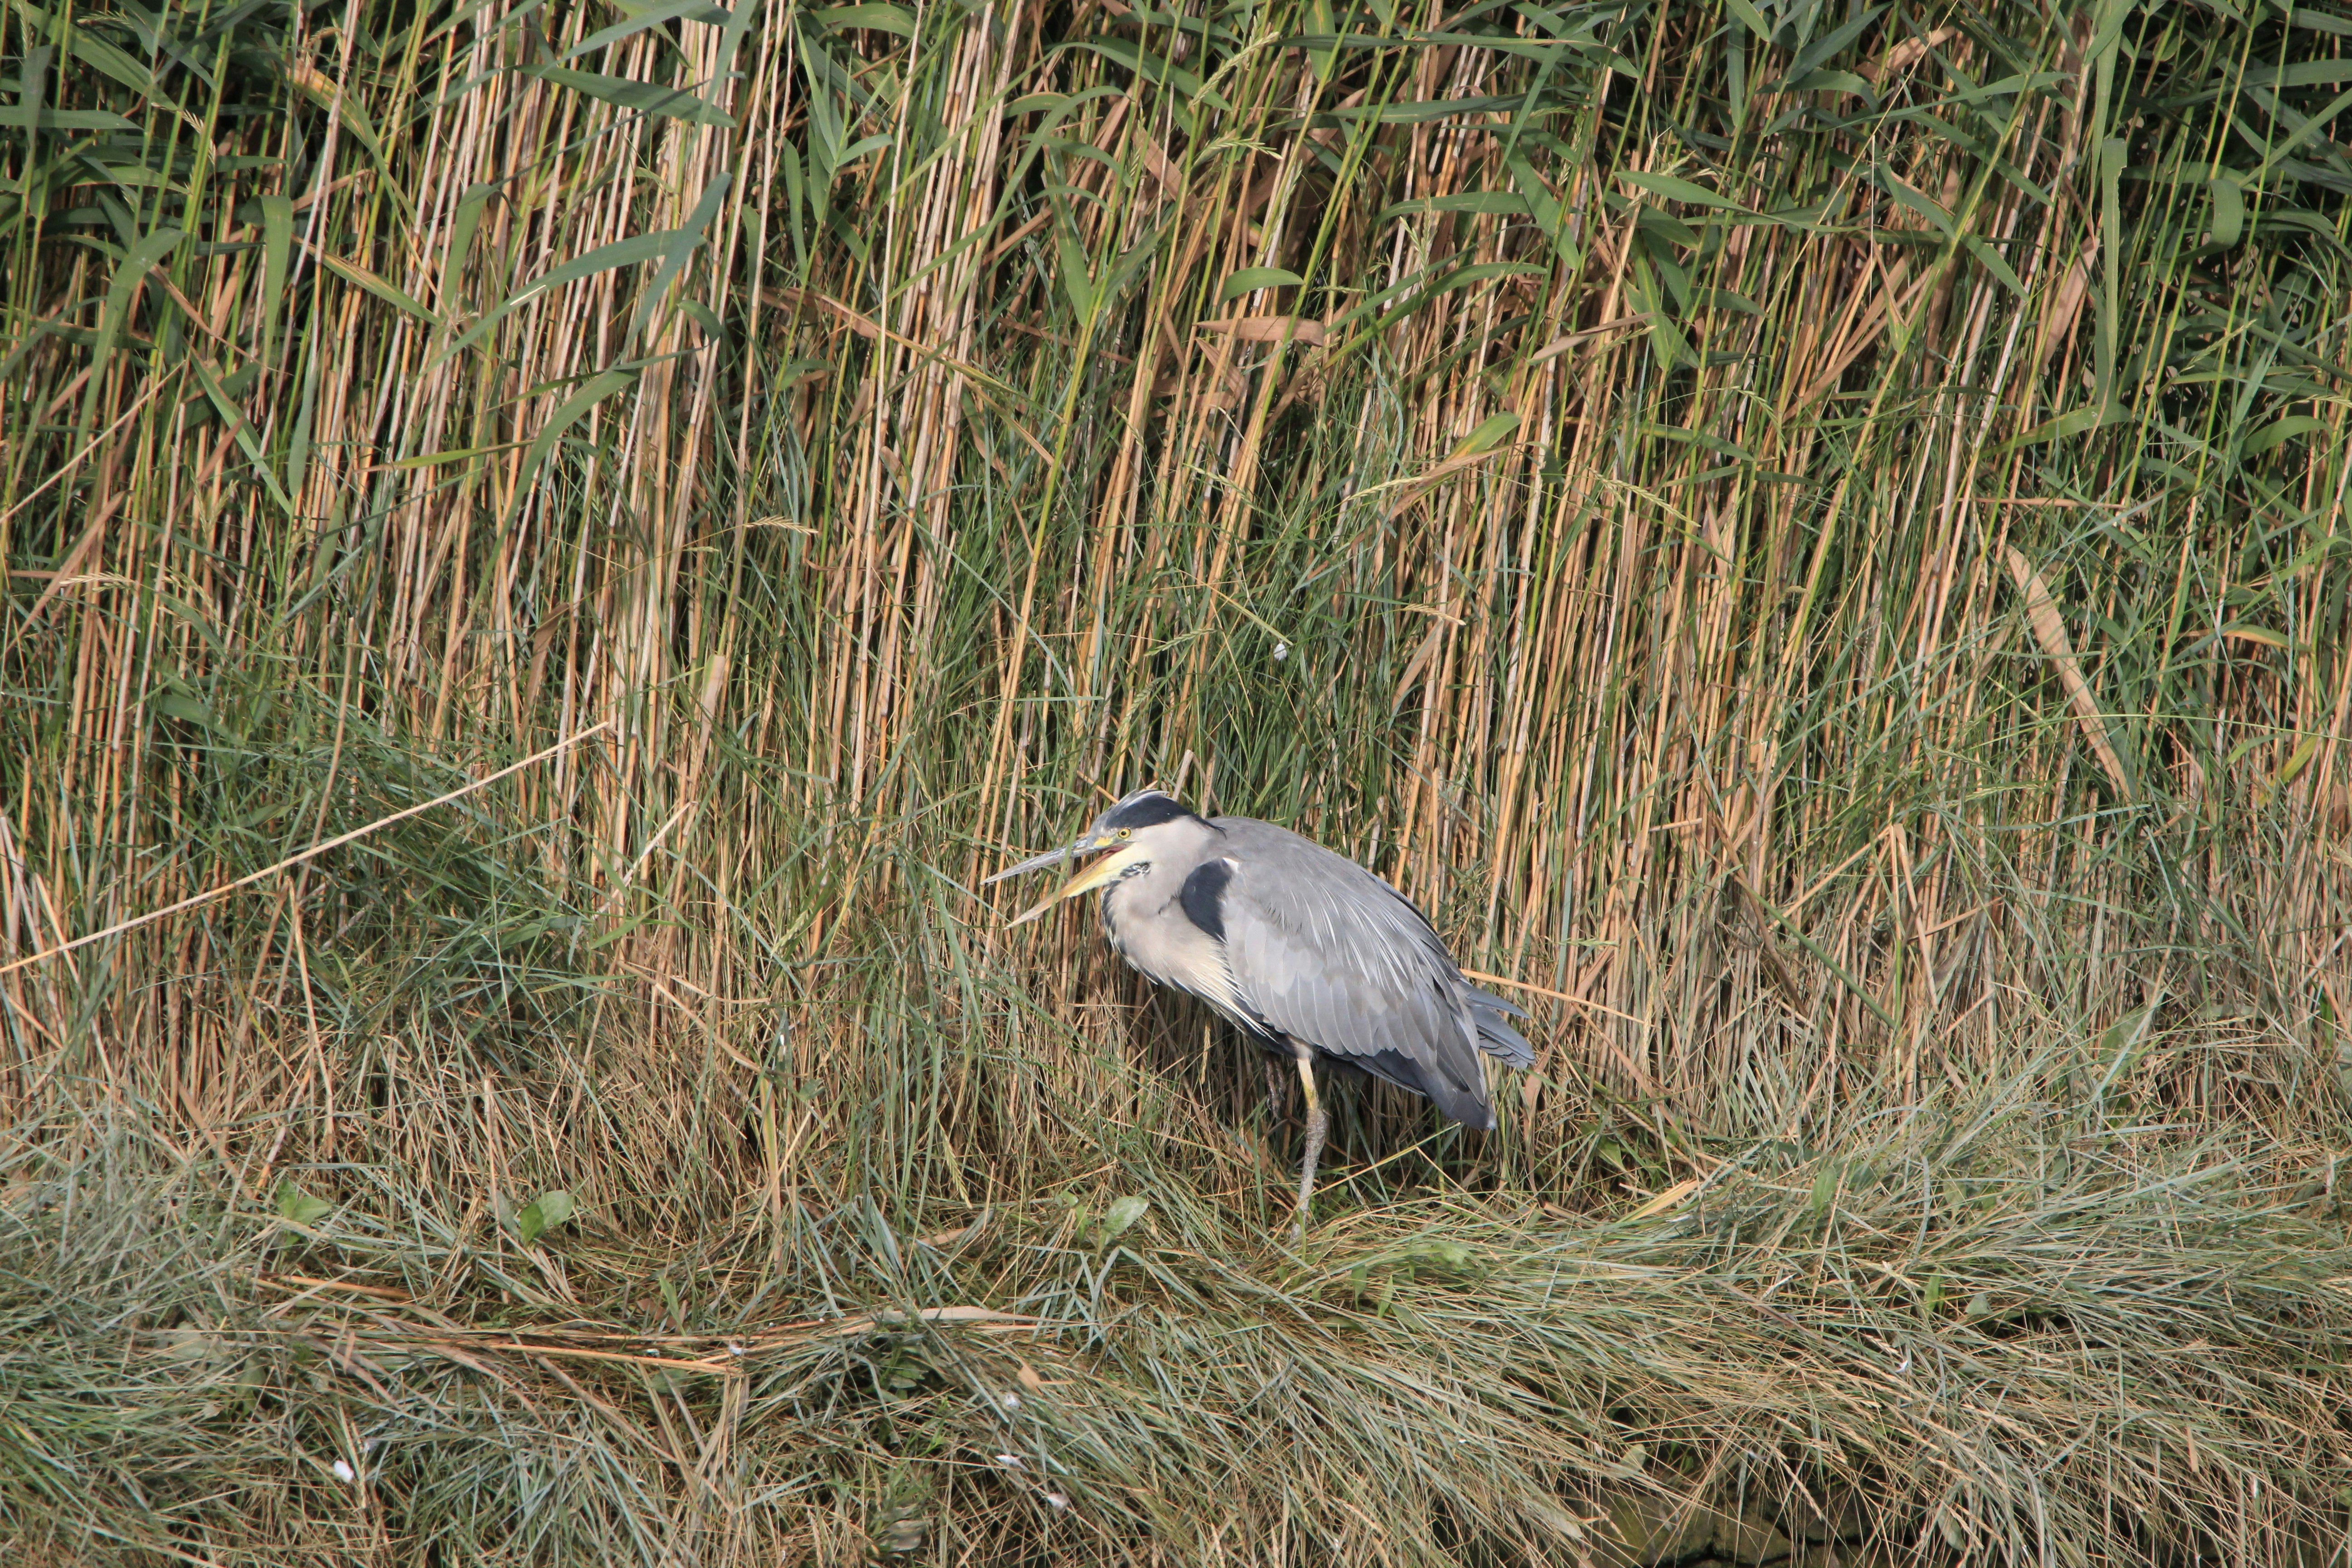 gray bird near bamboo grass